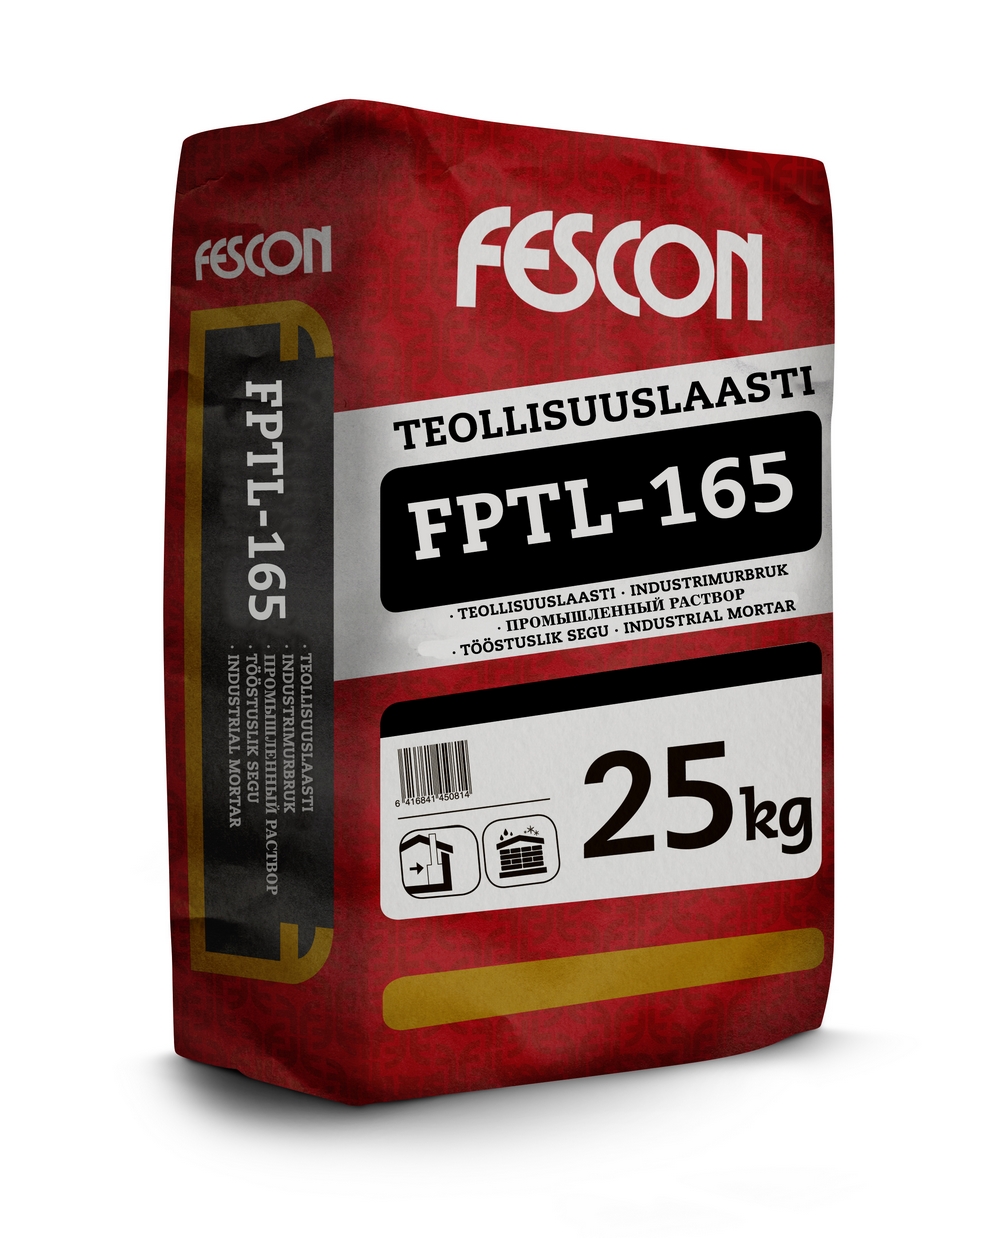 toostusliksegu FPTL 165 25kg